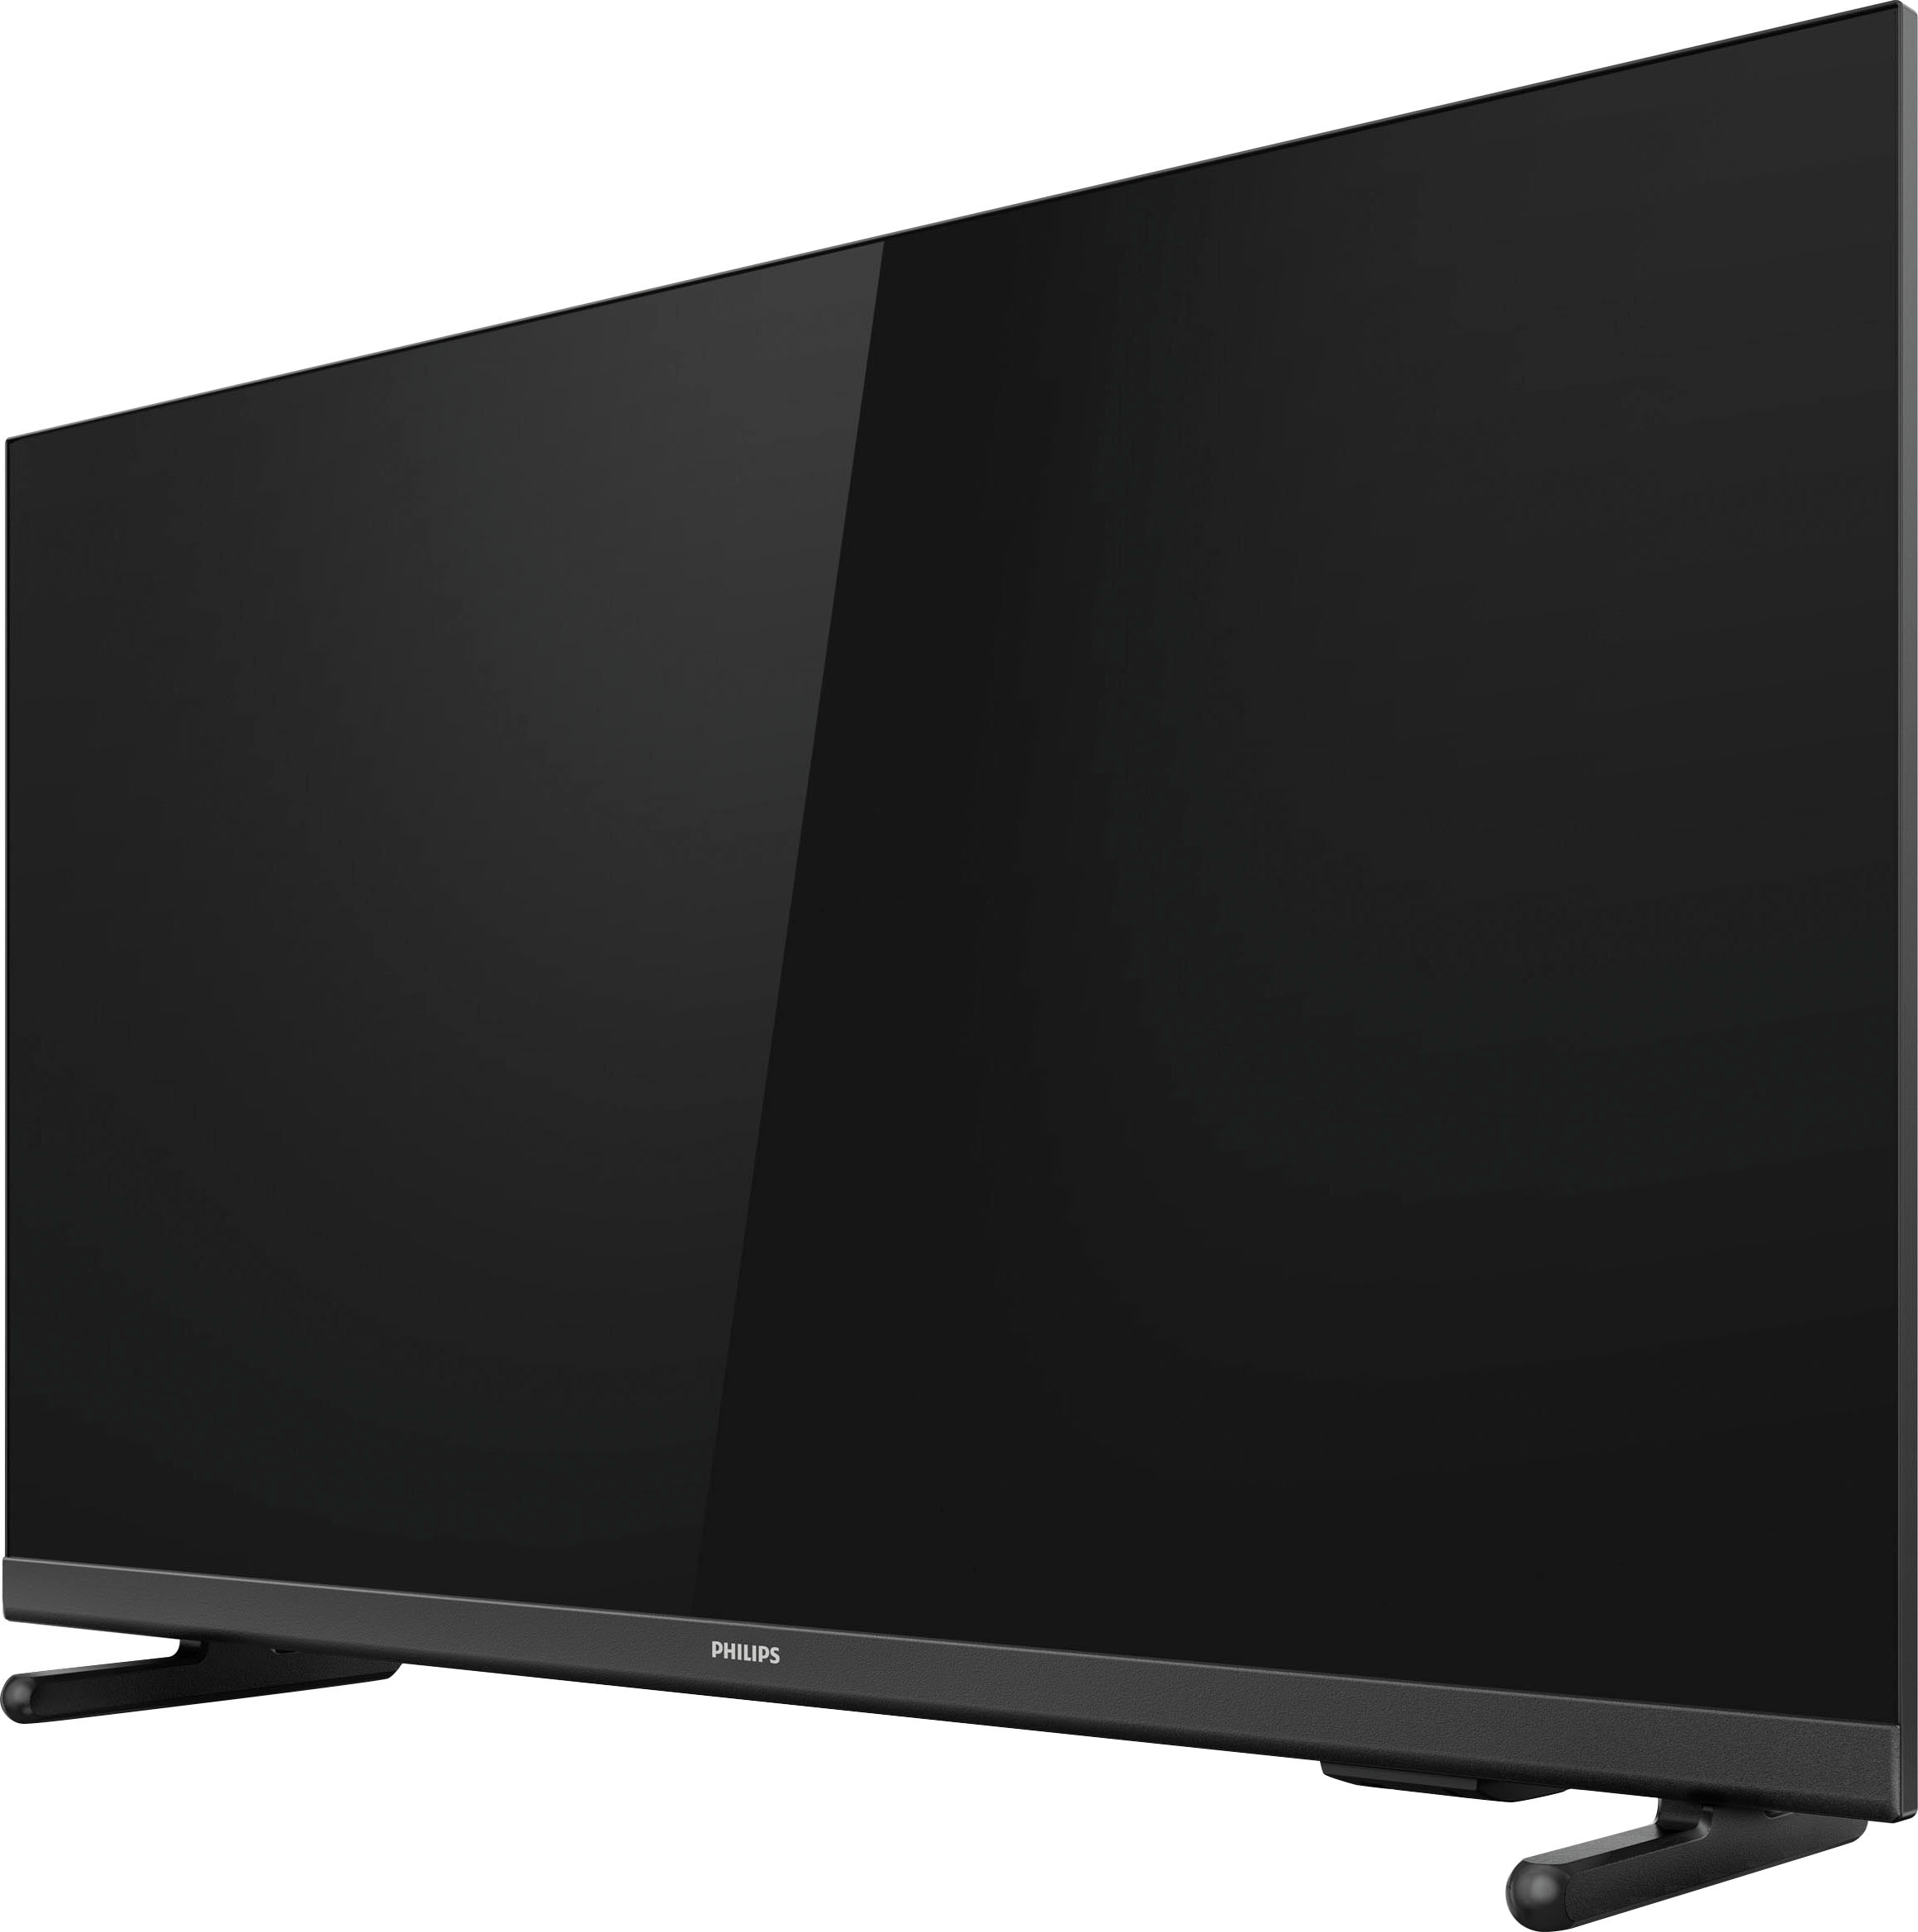 Philips LED-Fernseher »32PHS5507/12«, 80 cm/32 Zoll, HD ready | BAUR